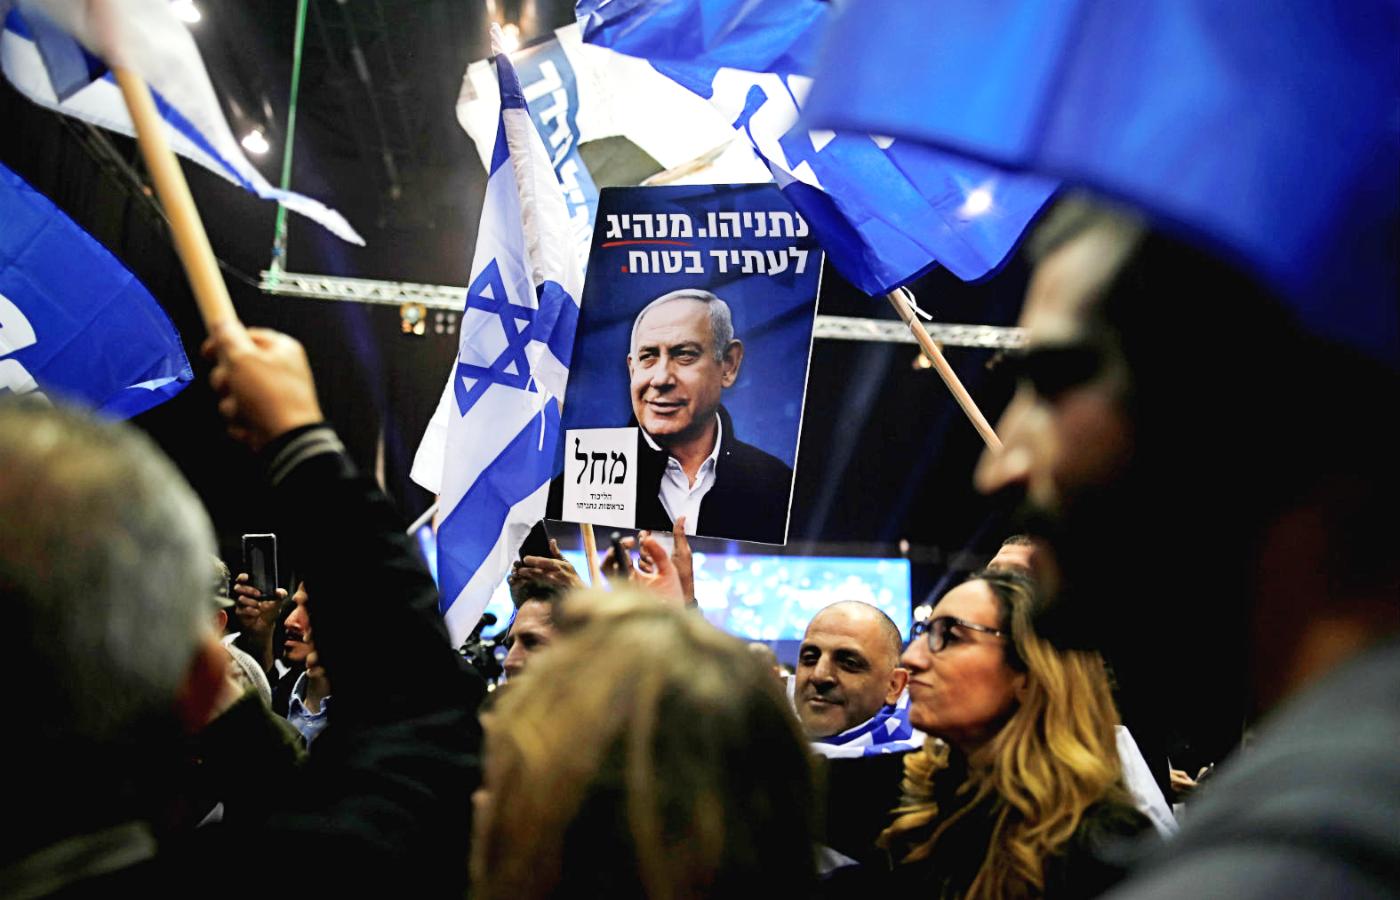 Likud, ugrupowanie premiera Beniamina Netanjahu, wygrywa wybory parlamentarne w Izraelu.